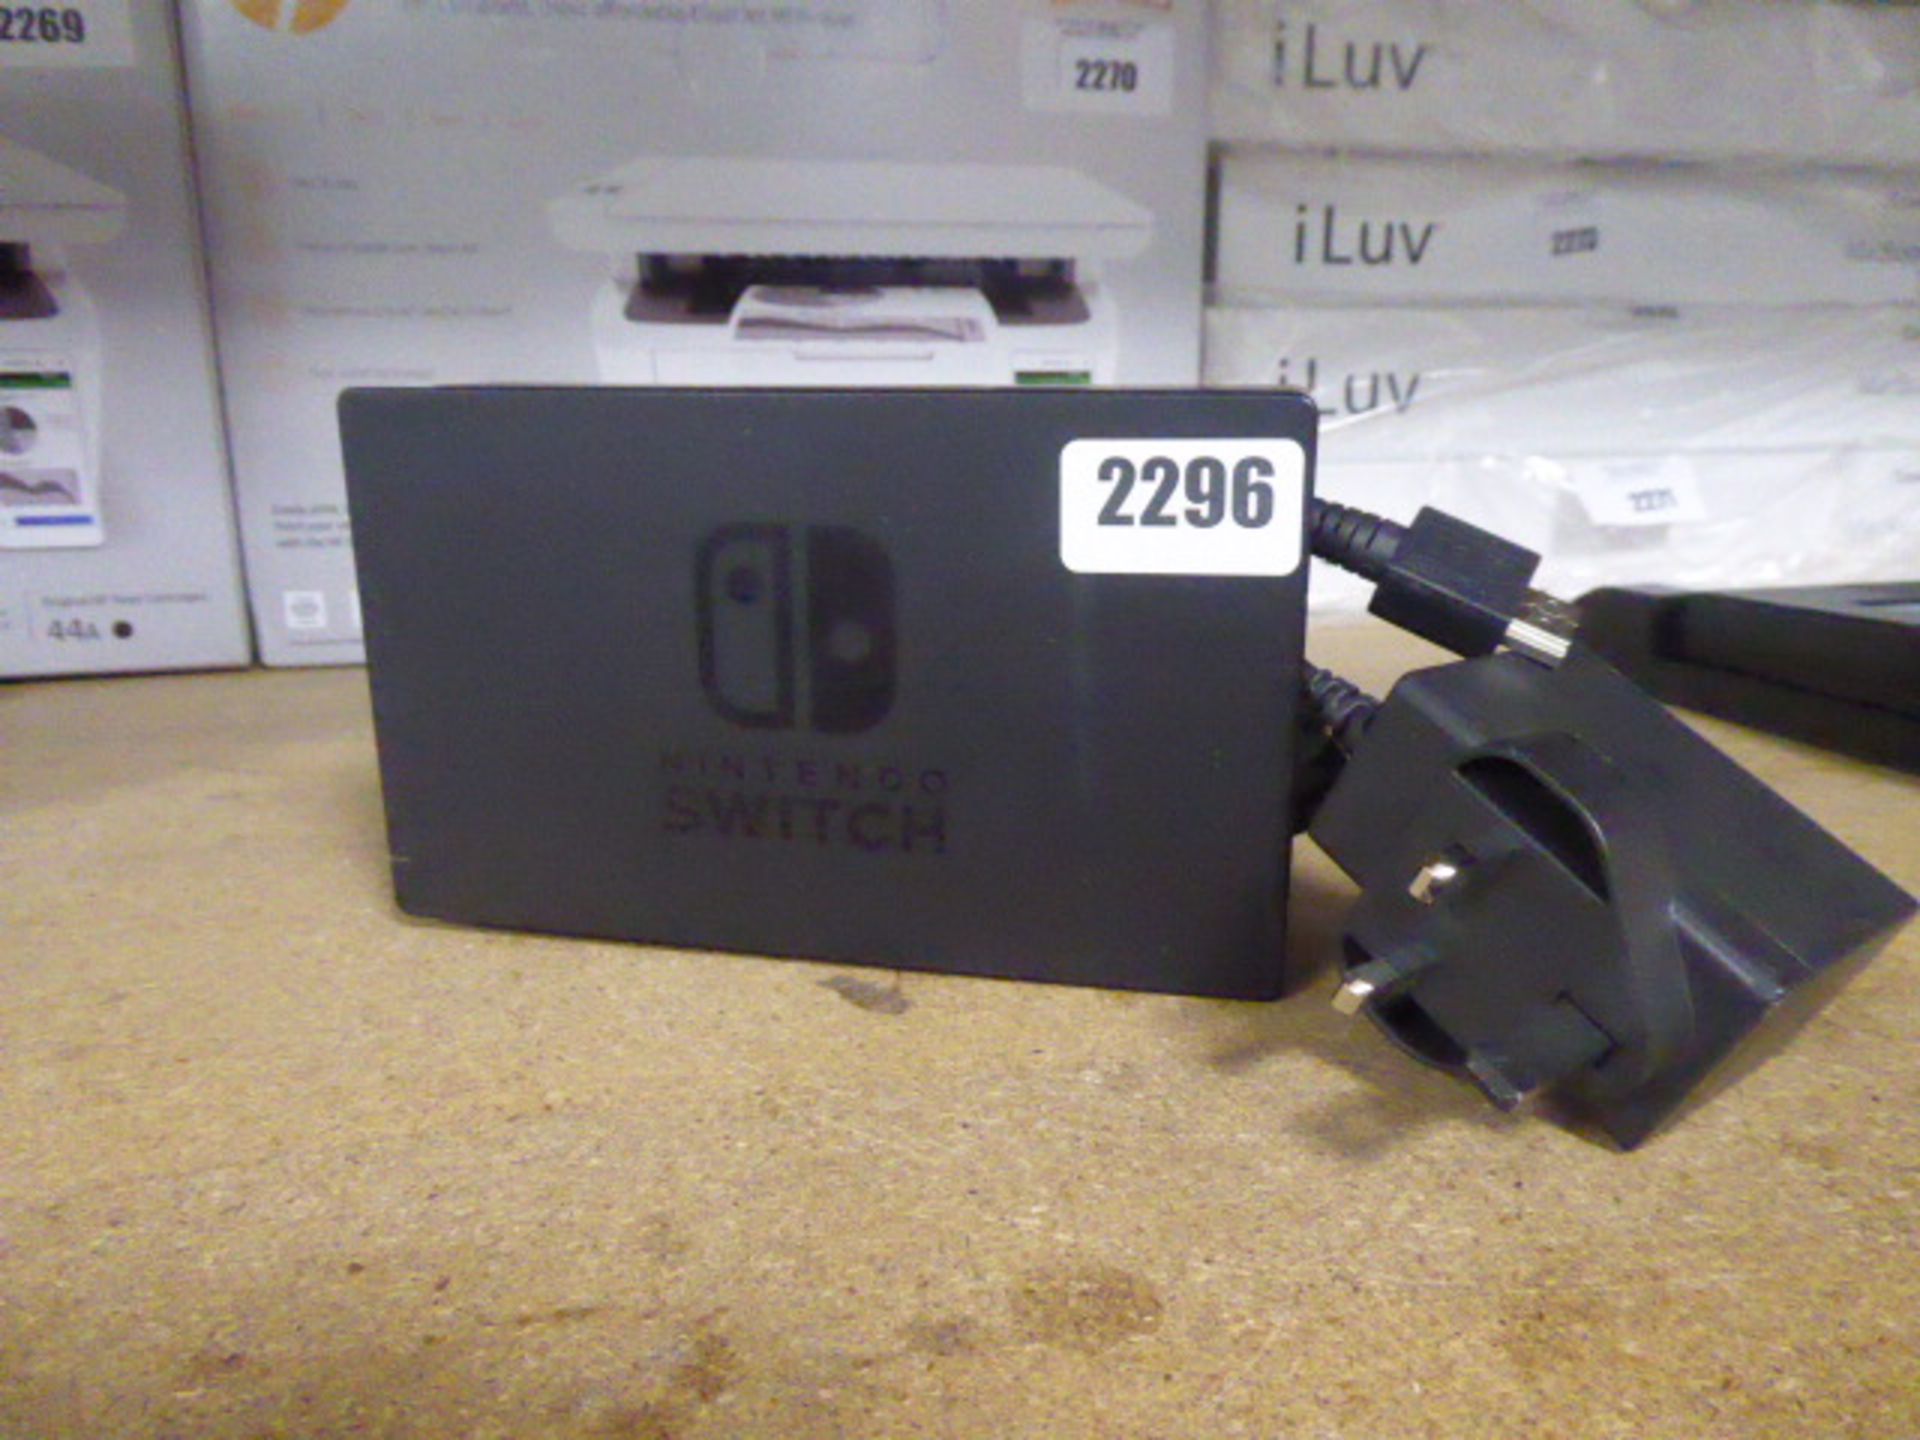 Nintendo Switch AV charging dock.